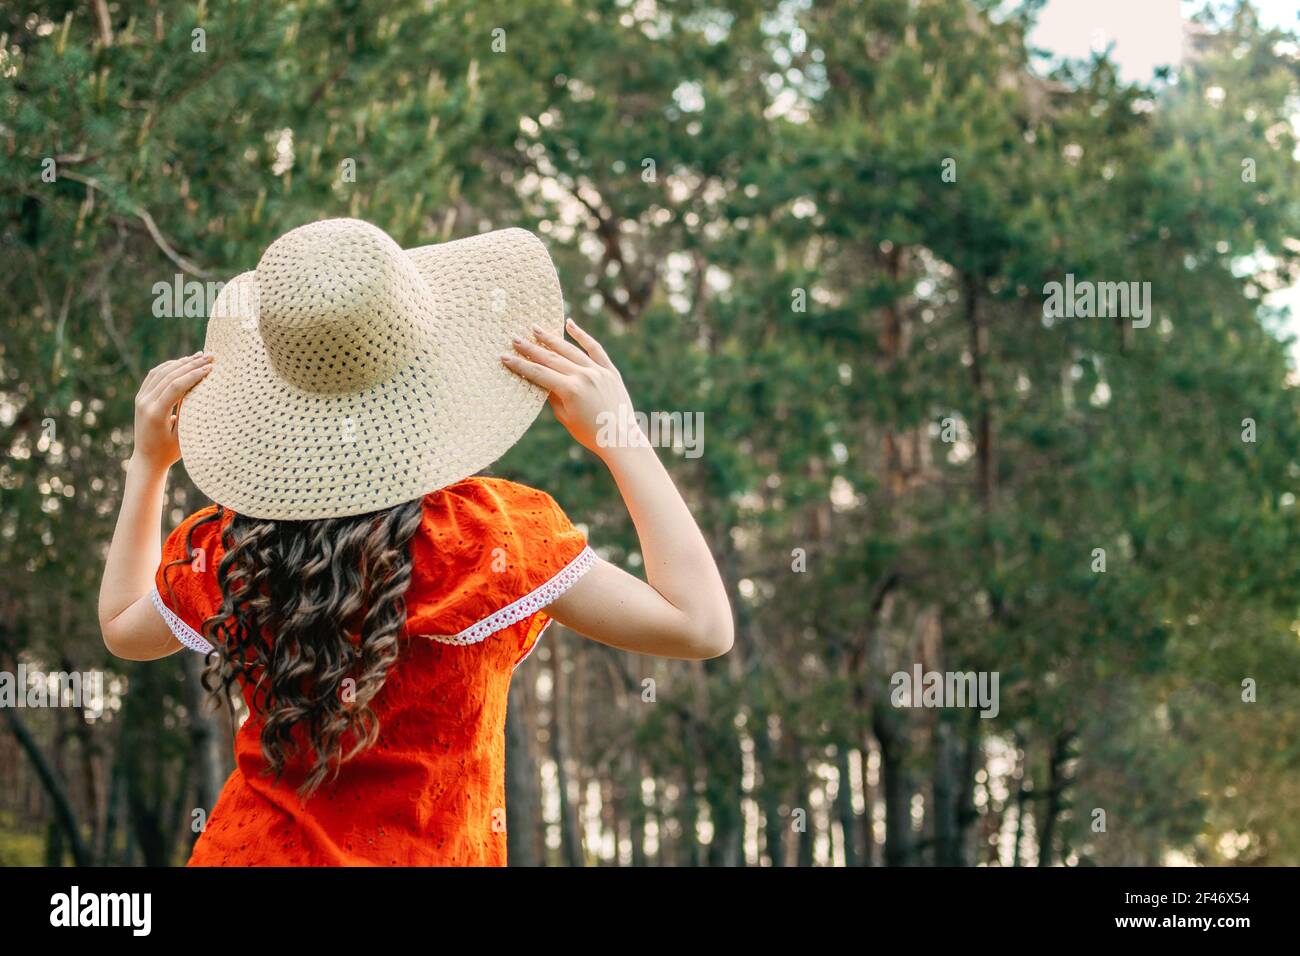 Godere della natura, benessere, benessere, stile di vita sano, vita lenta. Giovane bruna ragazza in abito rosso e cappello di paglia che cammina nella foresta, boschi. Foto Stock